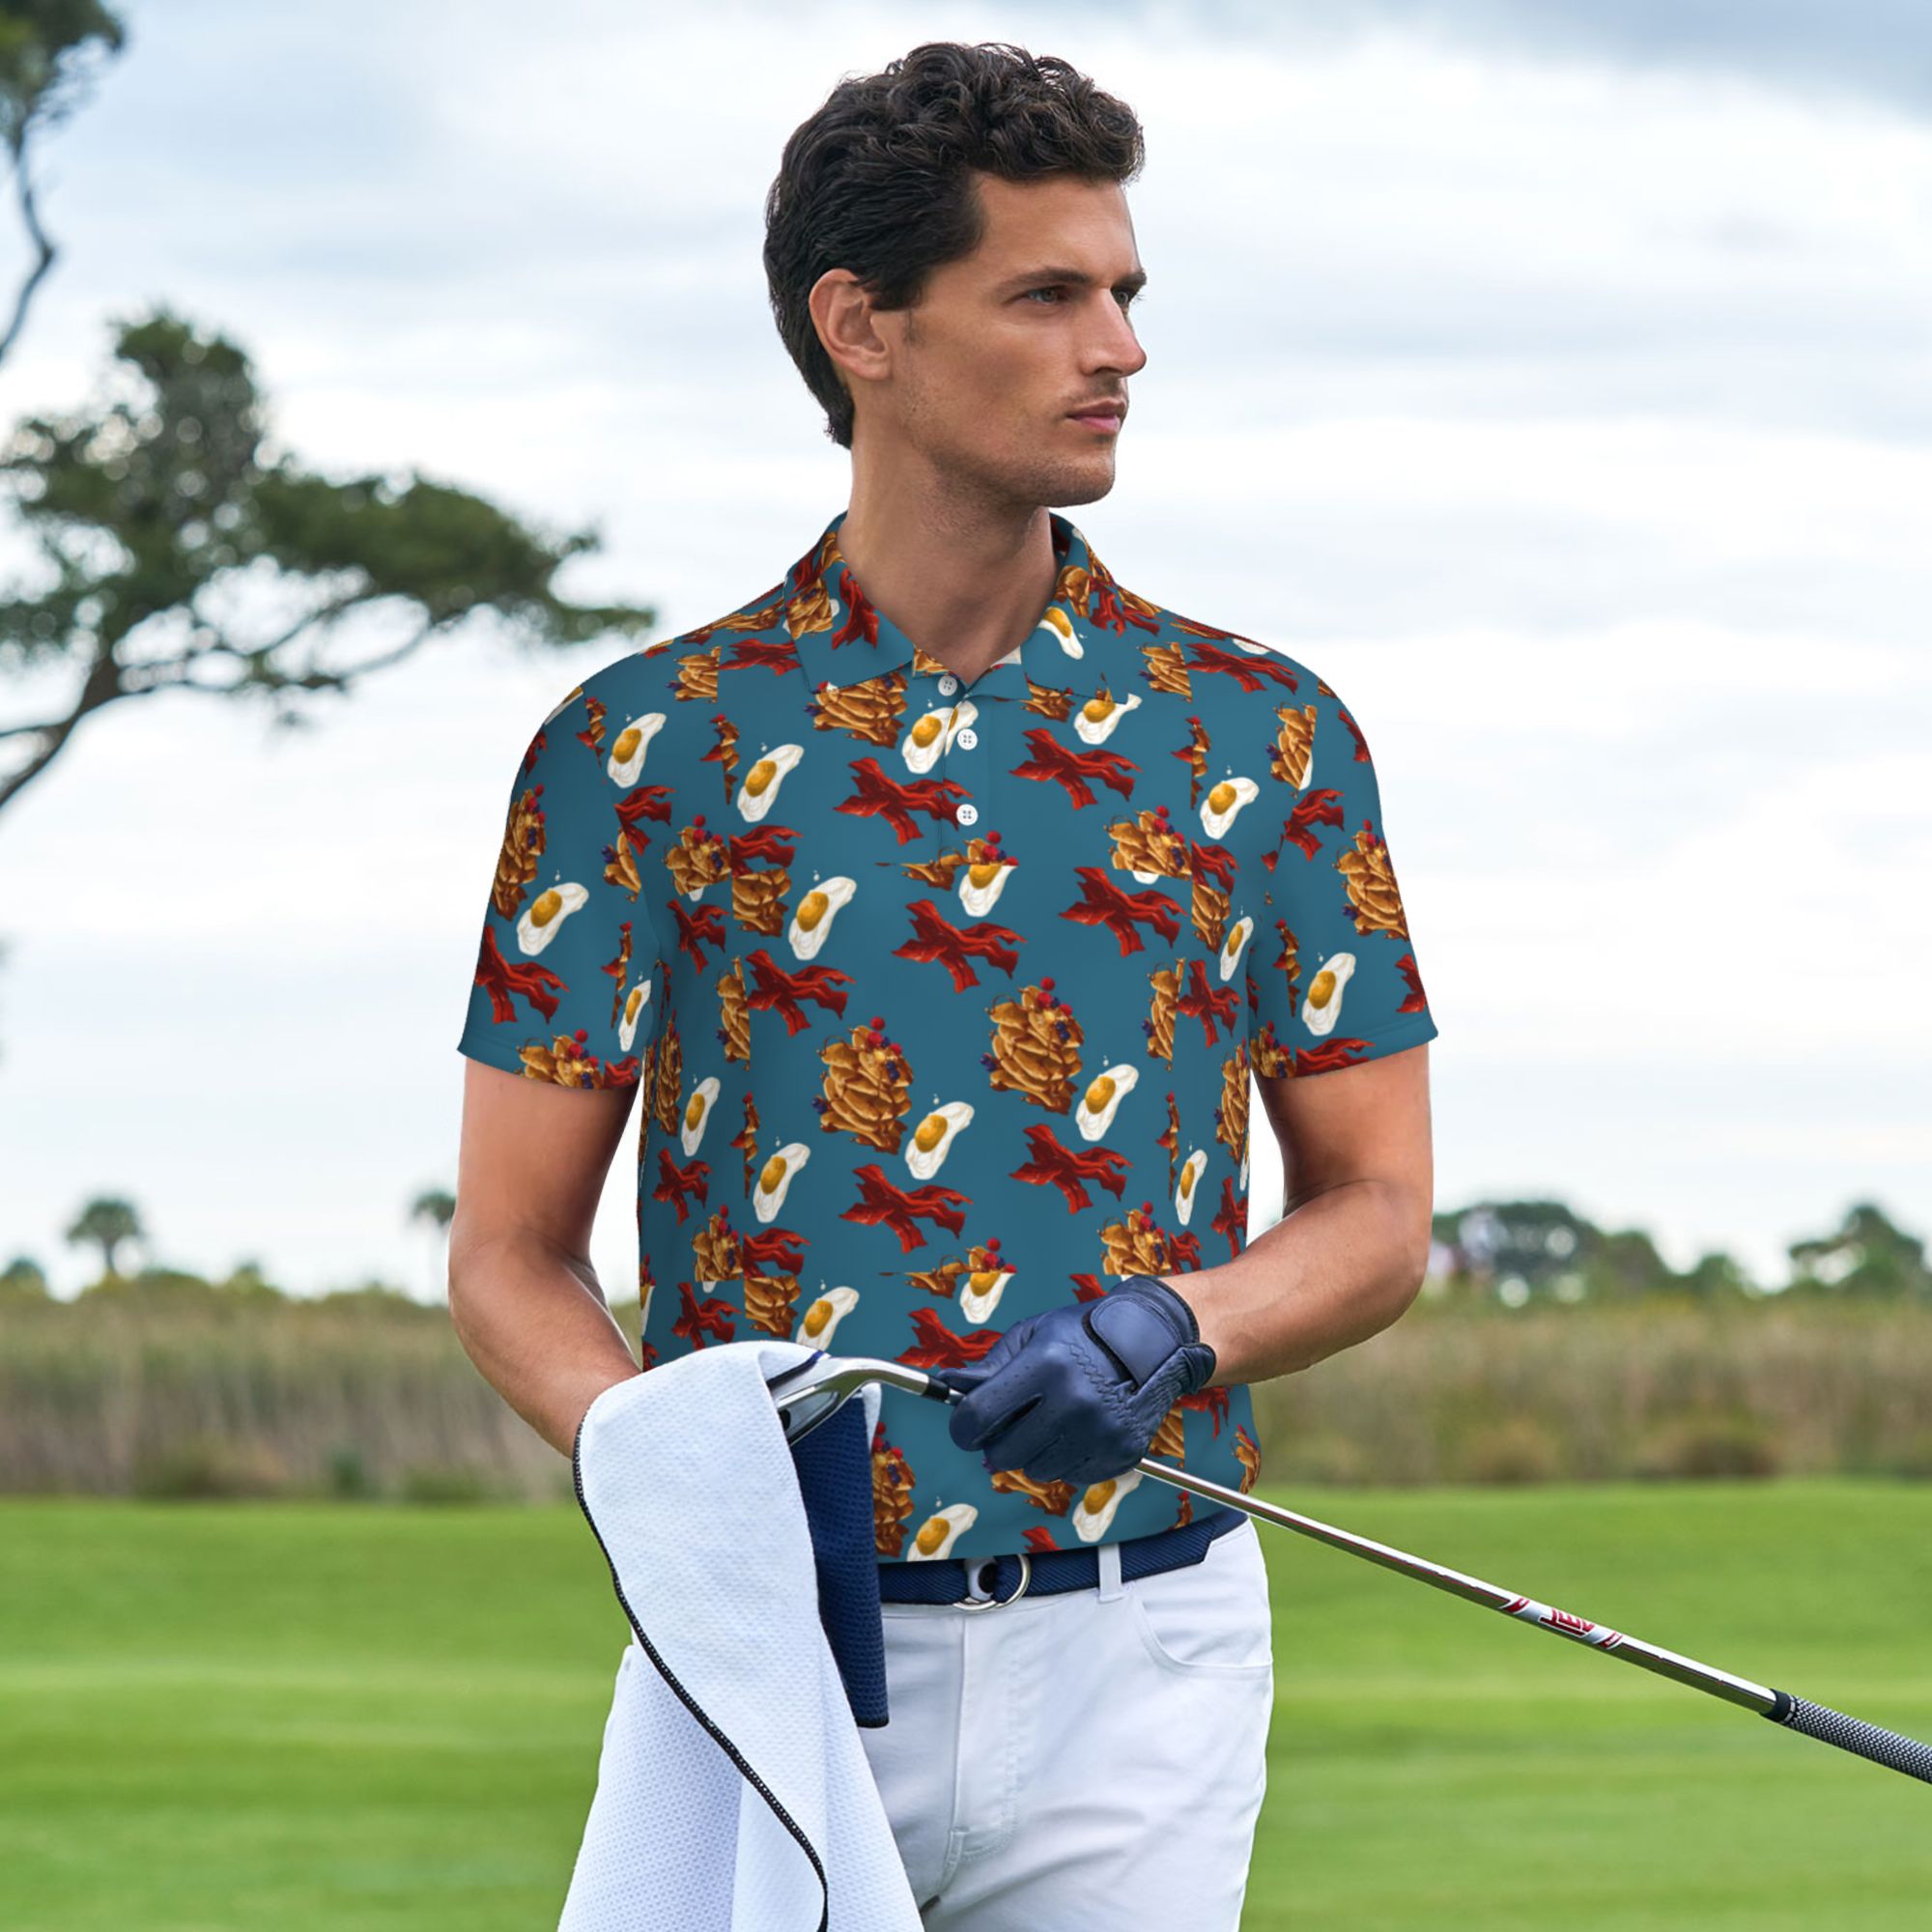 Egg Men's Classic Fit Short Sleeve Golf Shirt Moisture Wicking Quick ...